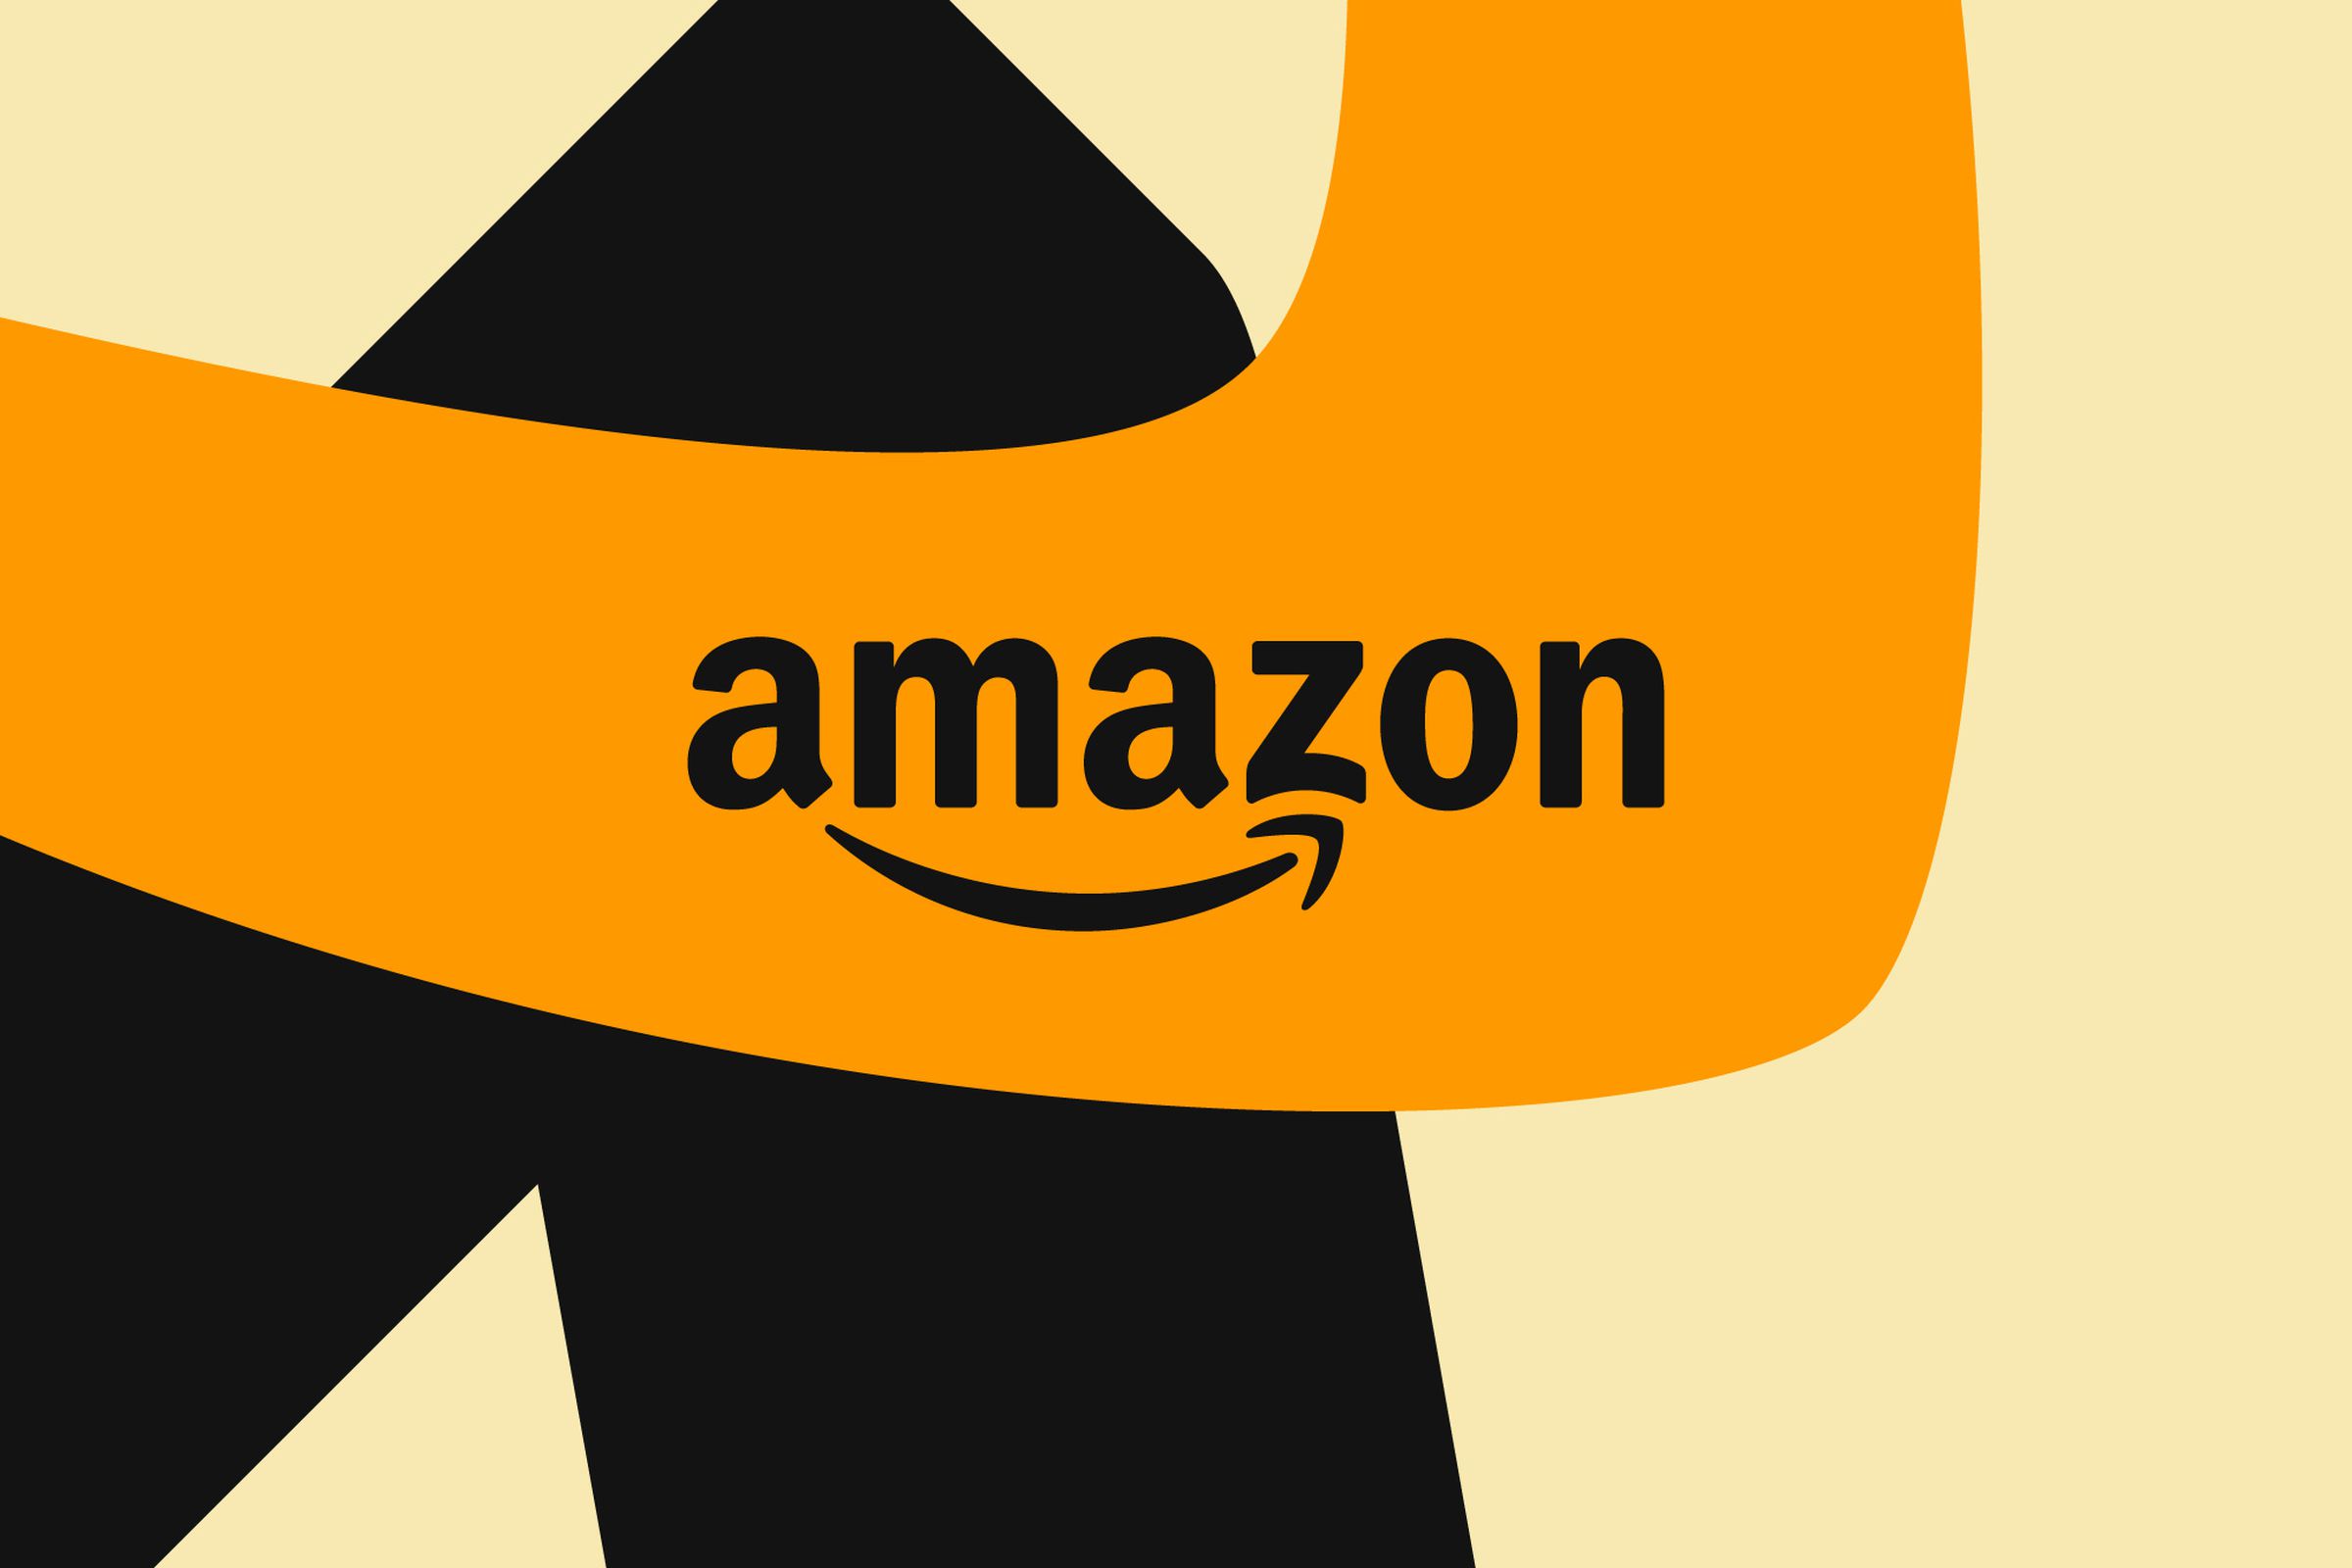 Ilustrasi logo Amazon dengan latar belakang garis-garis berwarna oranye, hitam, dan cokelat muda.